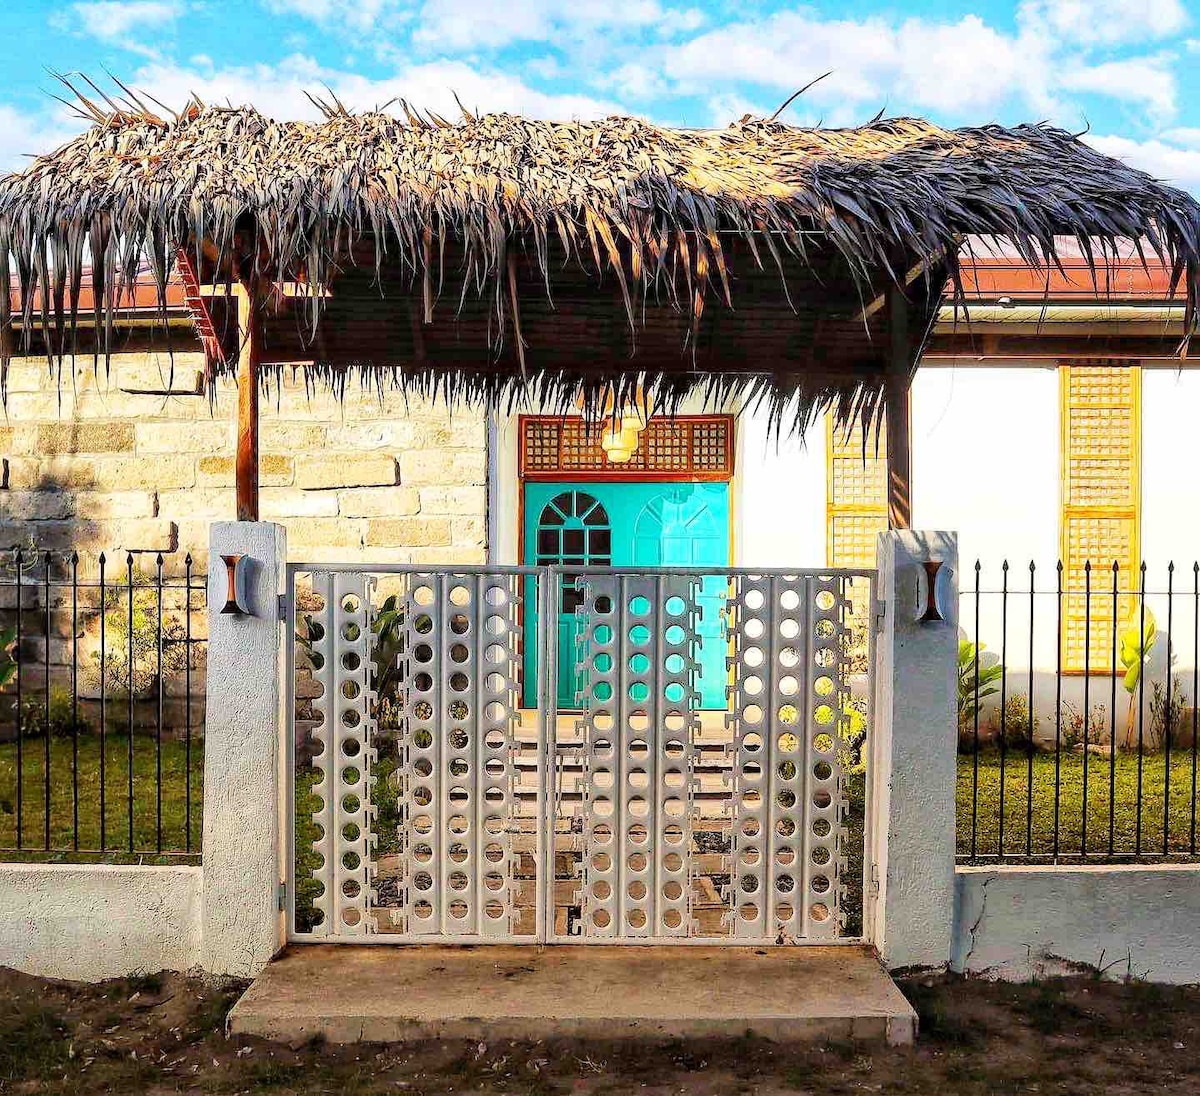 Casa Artemio (Tropical 3-Bedroom Farm Villa)